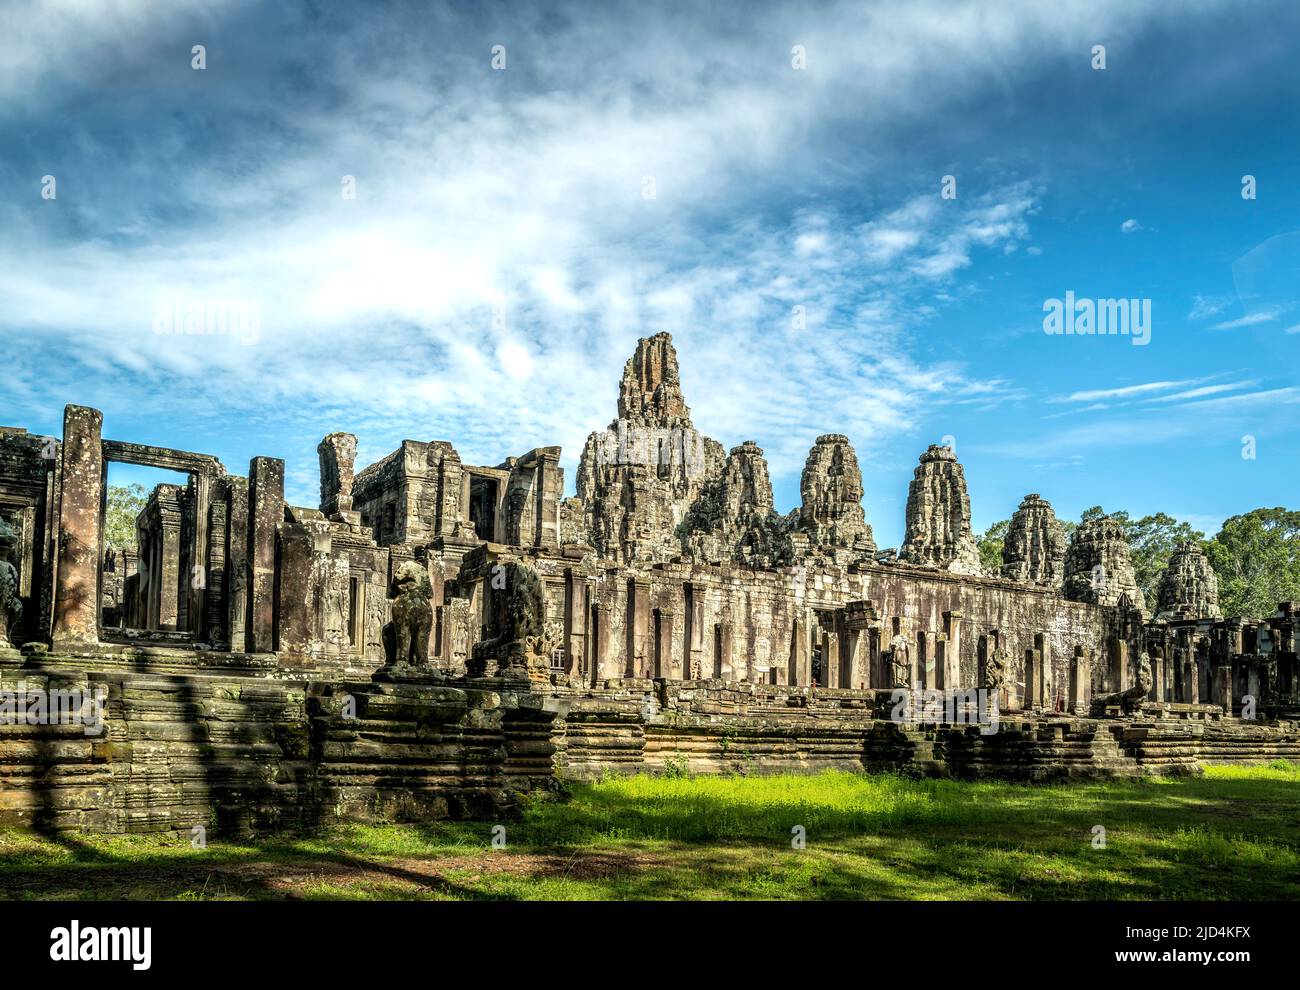 Bayon Temple at Angkor Thom, Siem Reap Cambodia Stock Photo